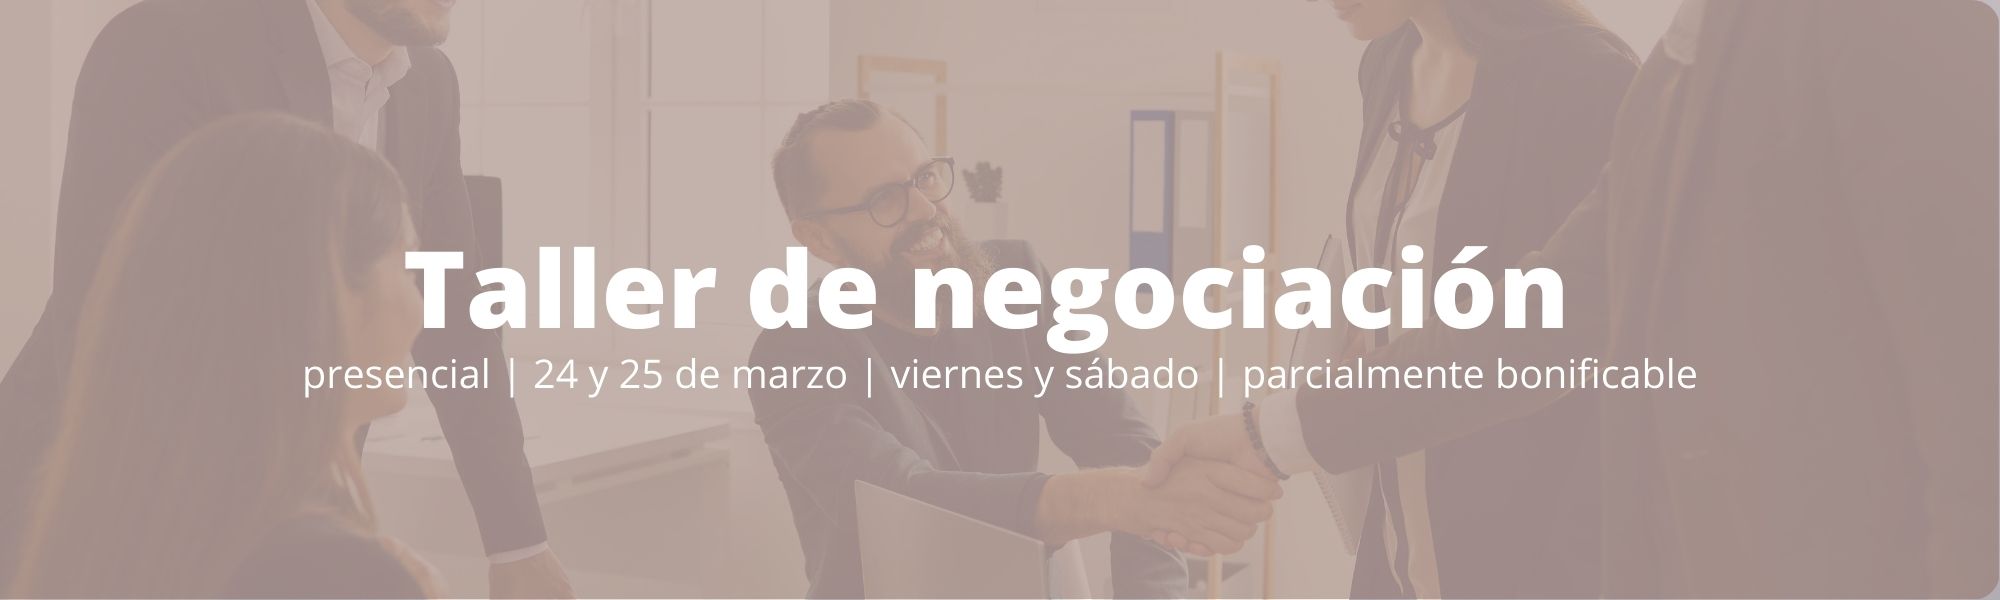 Taller de Negociación | curso | parcialmente bonificable | Cámara de Comercio de Murcia